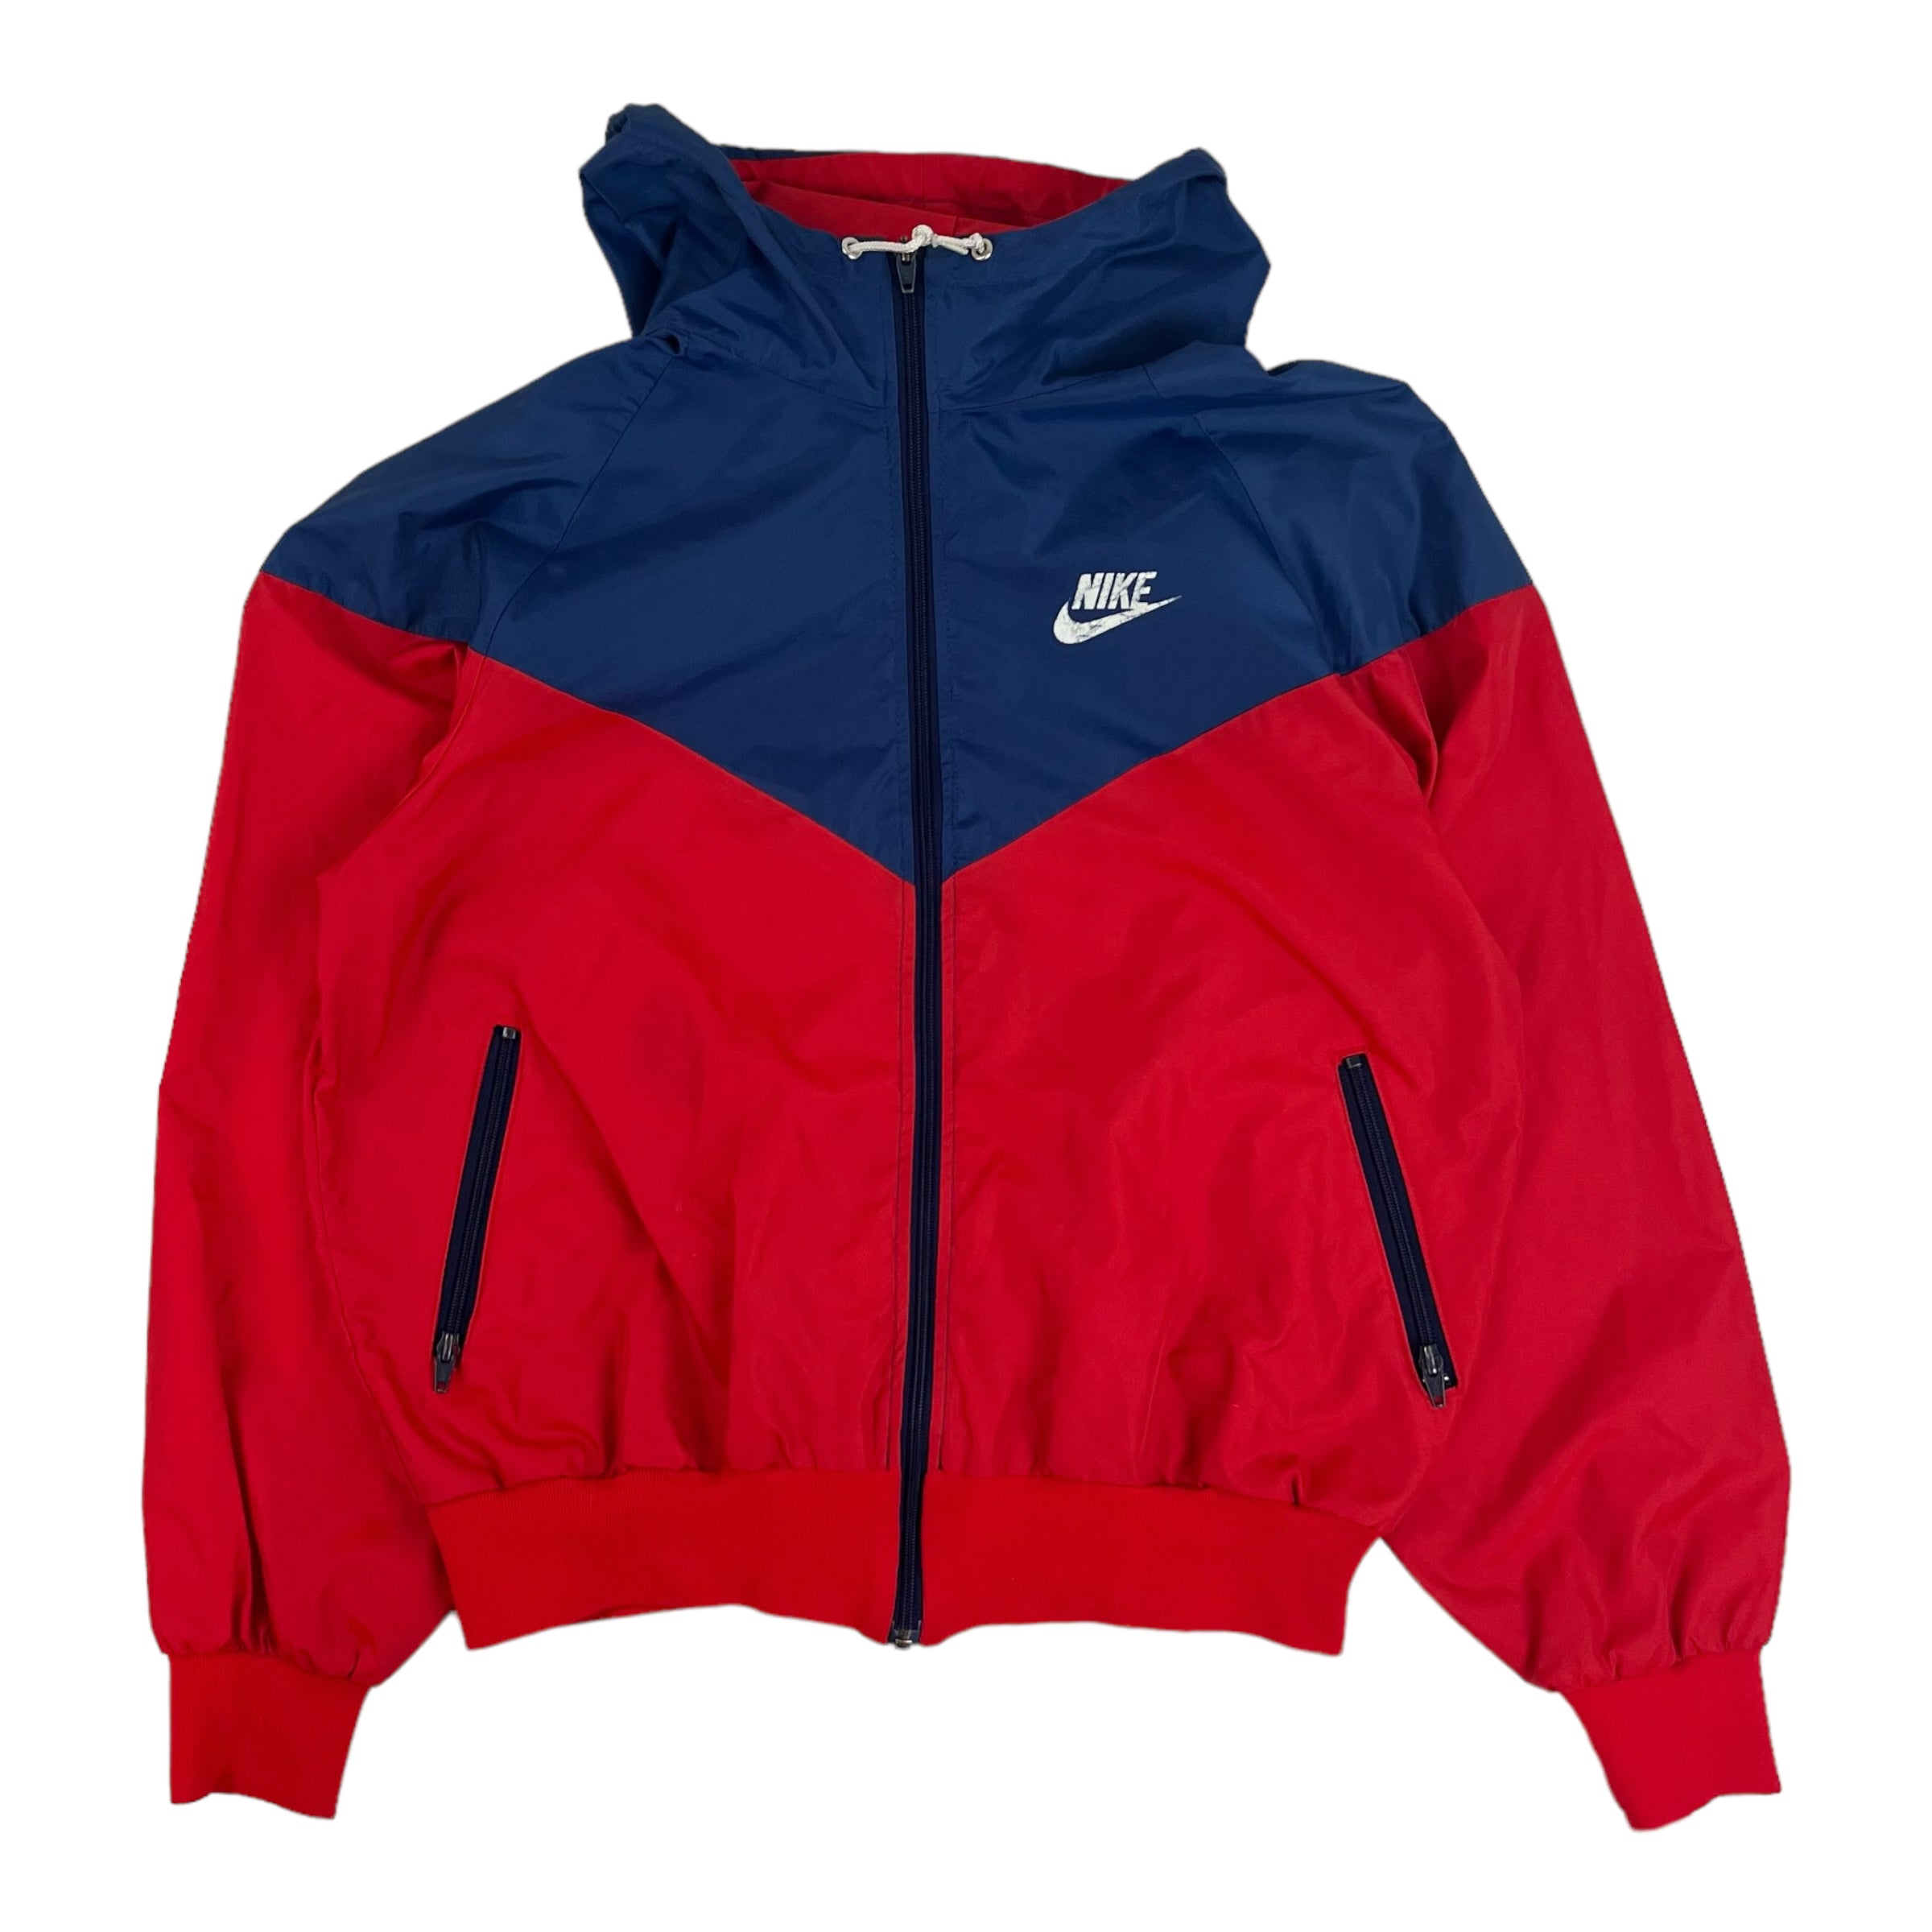 Vintage Nike Windrunner Navy/Red Jacket